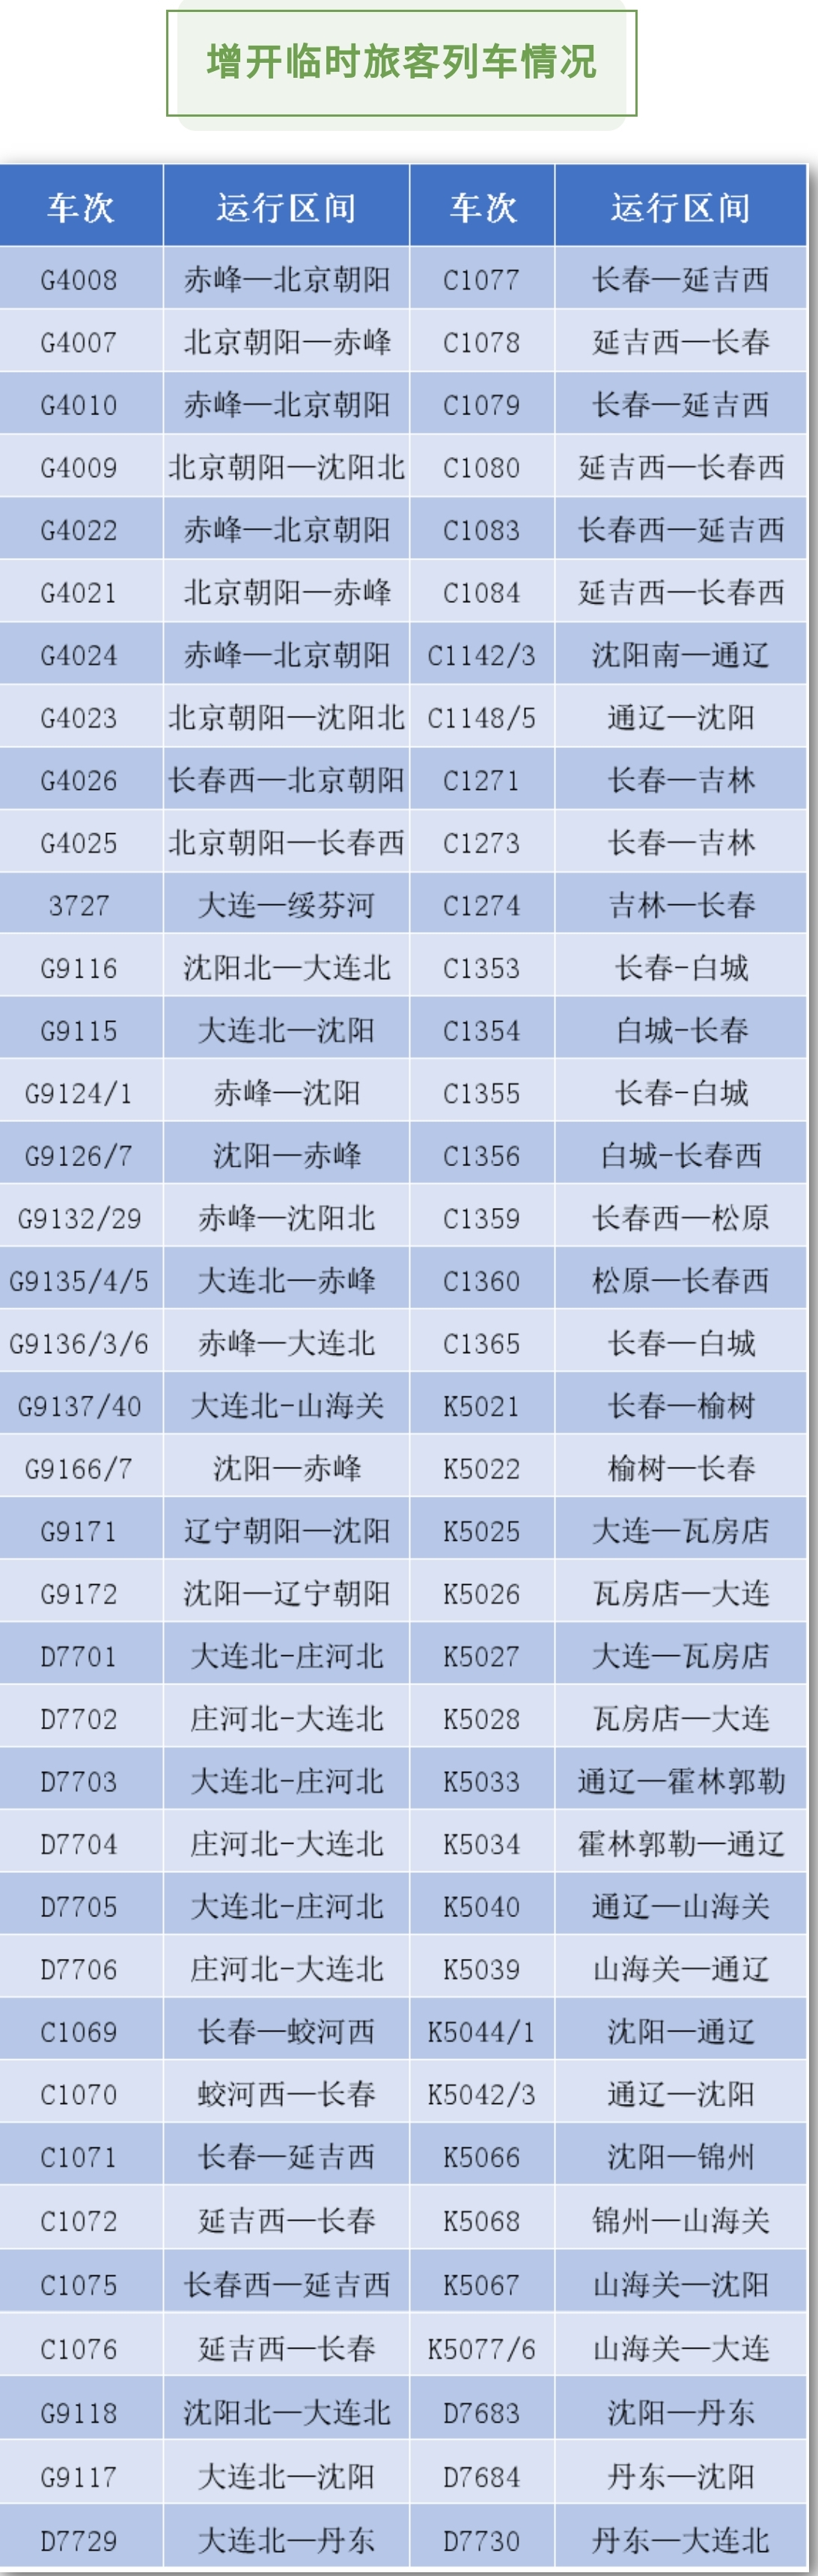 5月3日 沈阳铁路增开临客74列